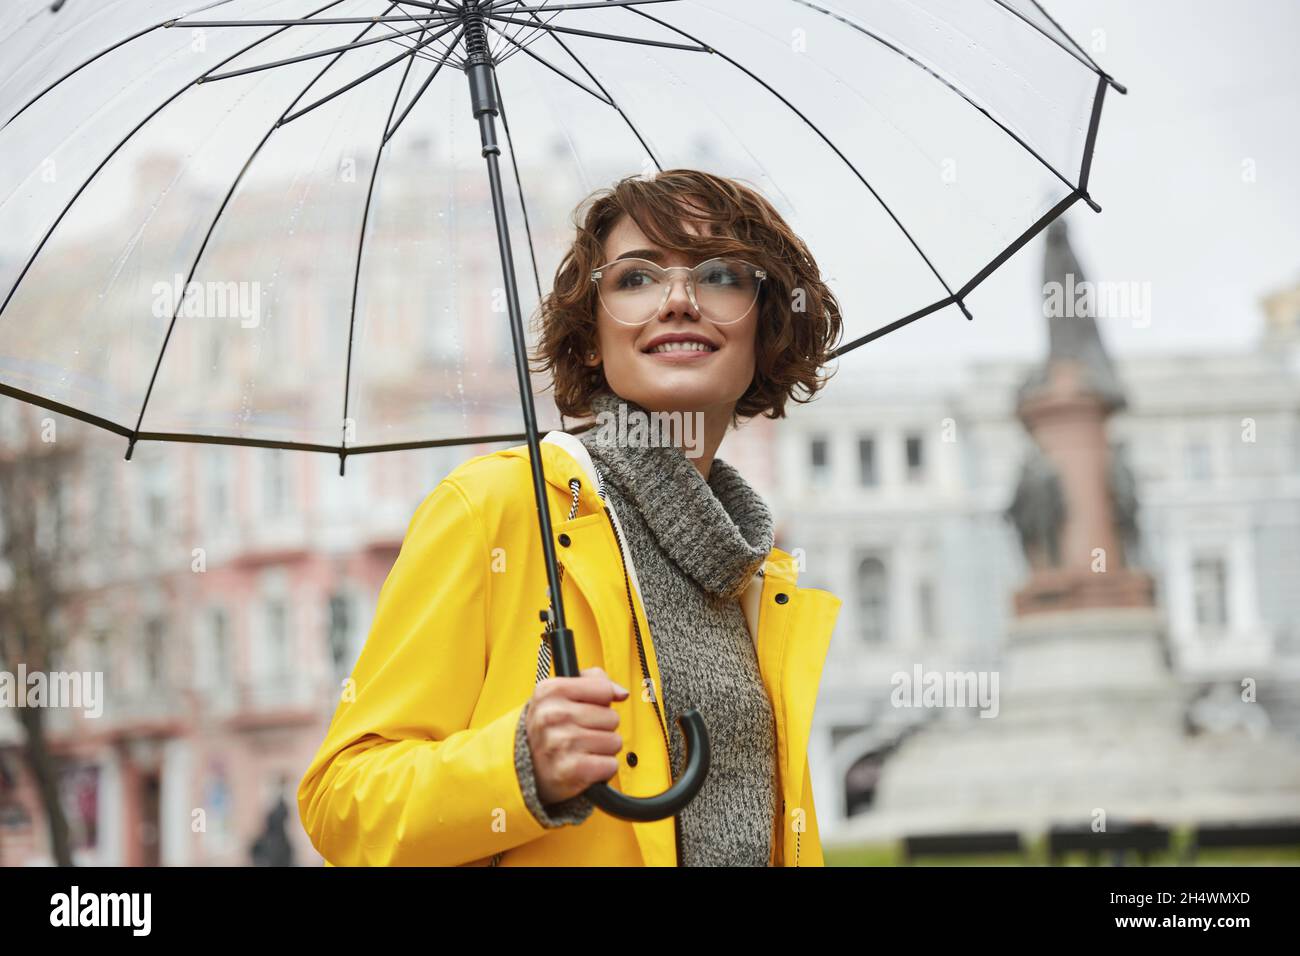 Chica joven con chubasquero amarillo con paraguas transparente en